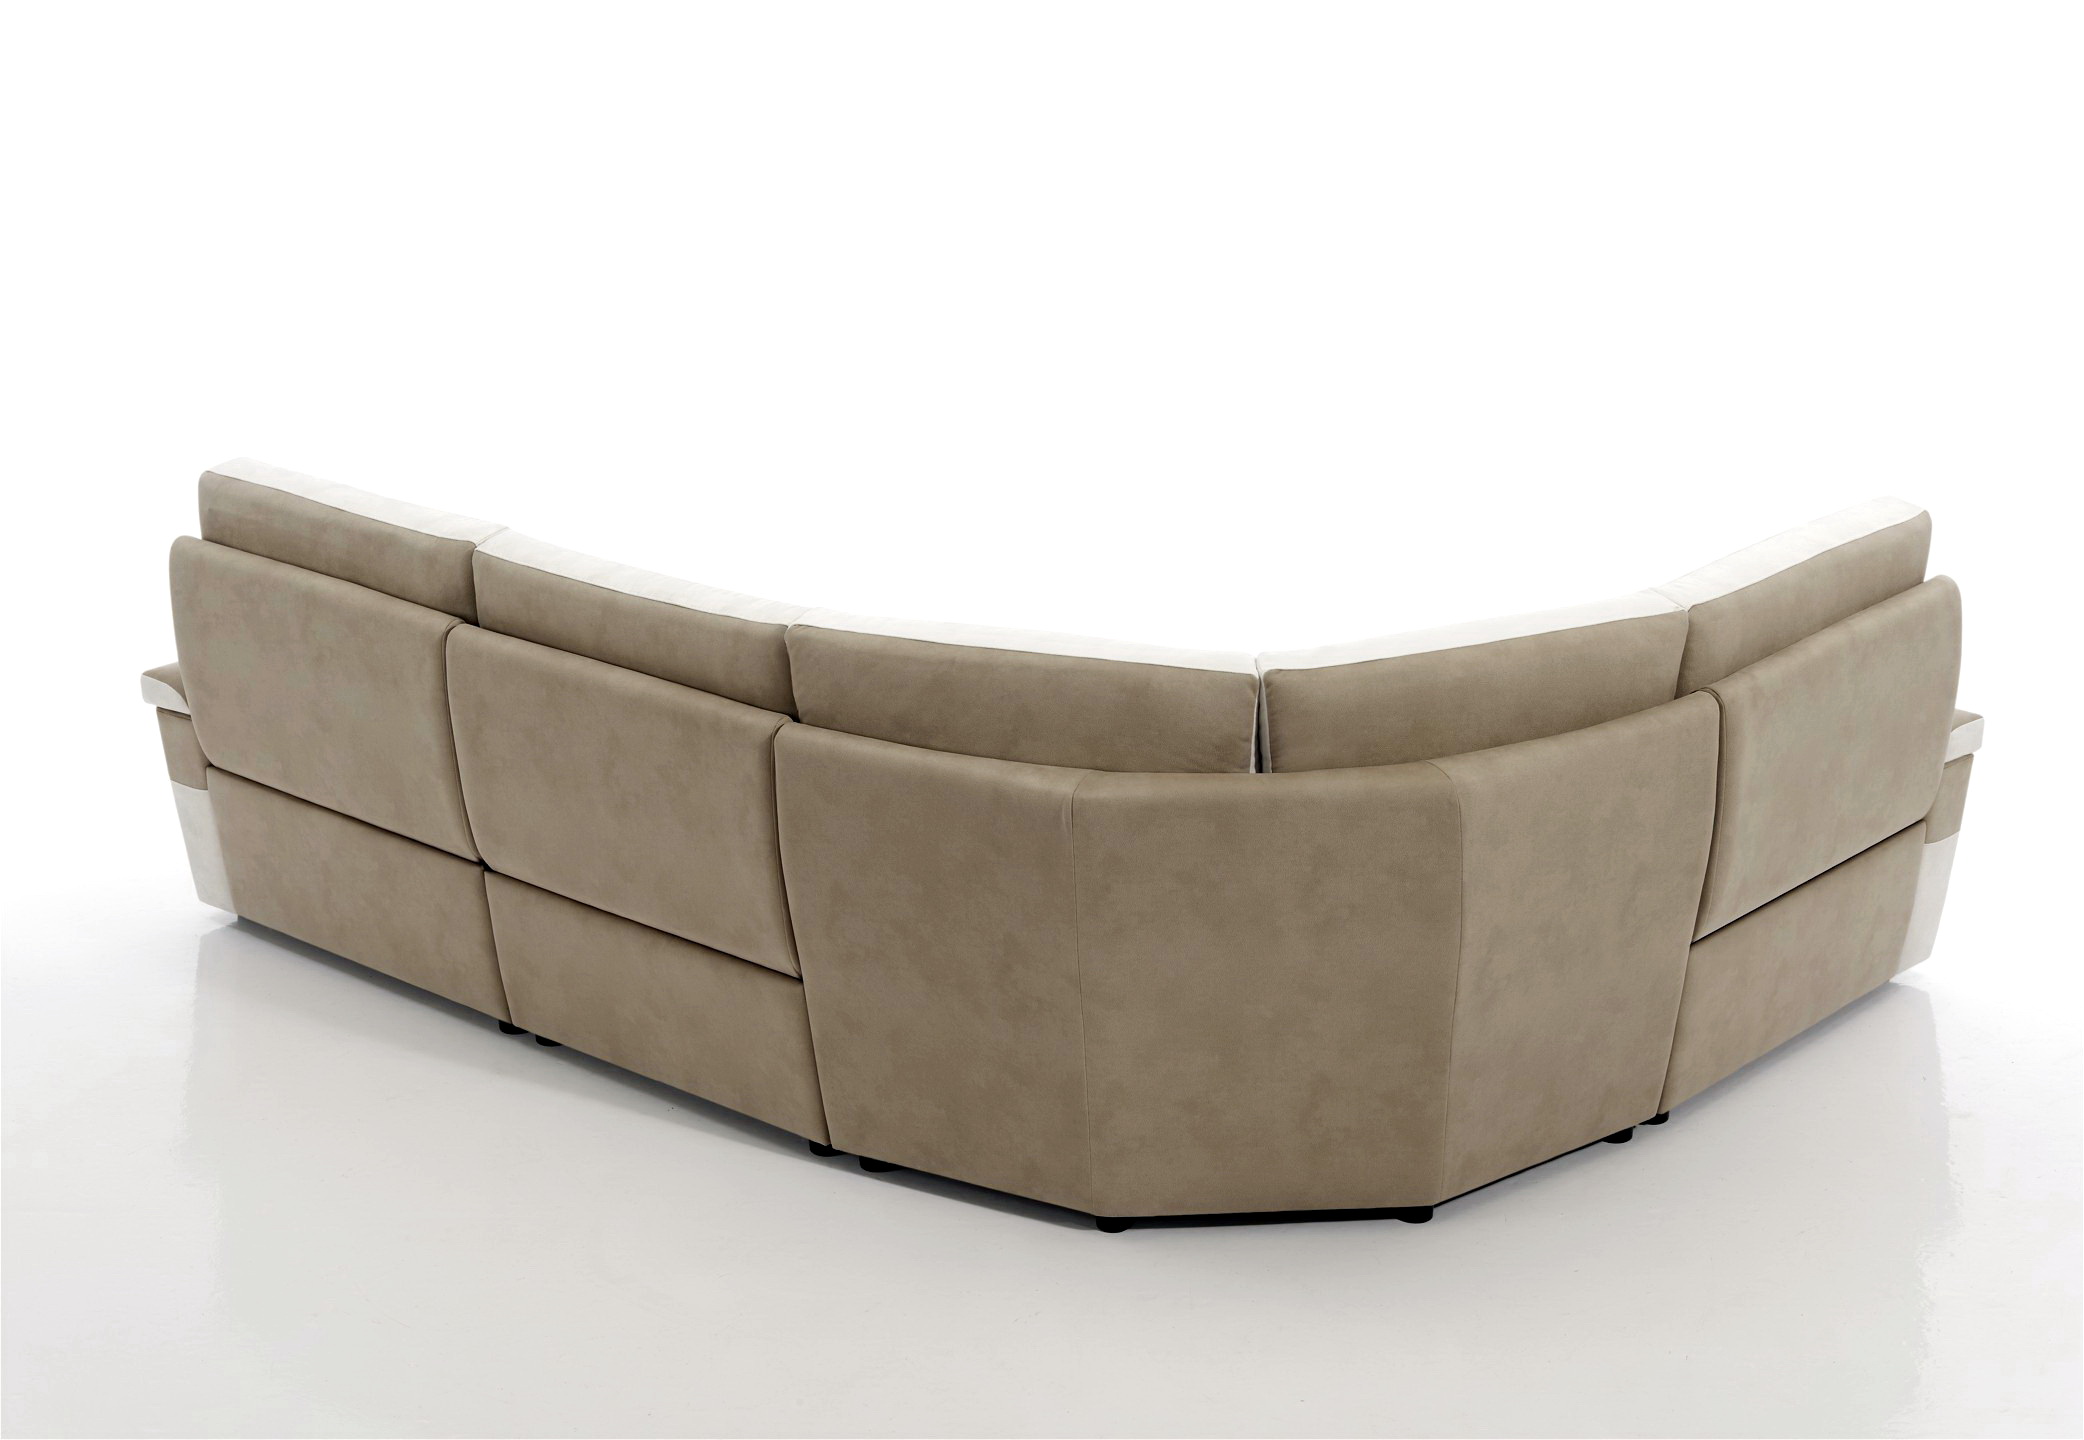 Soriano Martinez Tapizados modelo Lyon confort 0041.2 chaise-longue en muebles antoñán® León